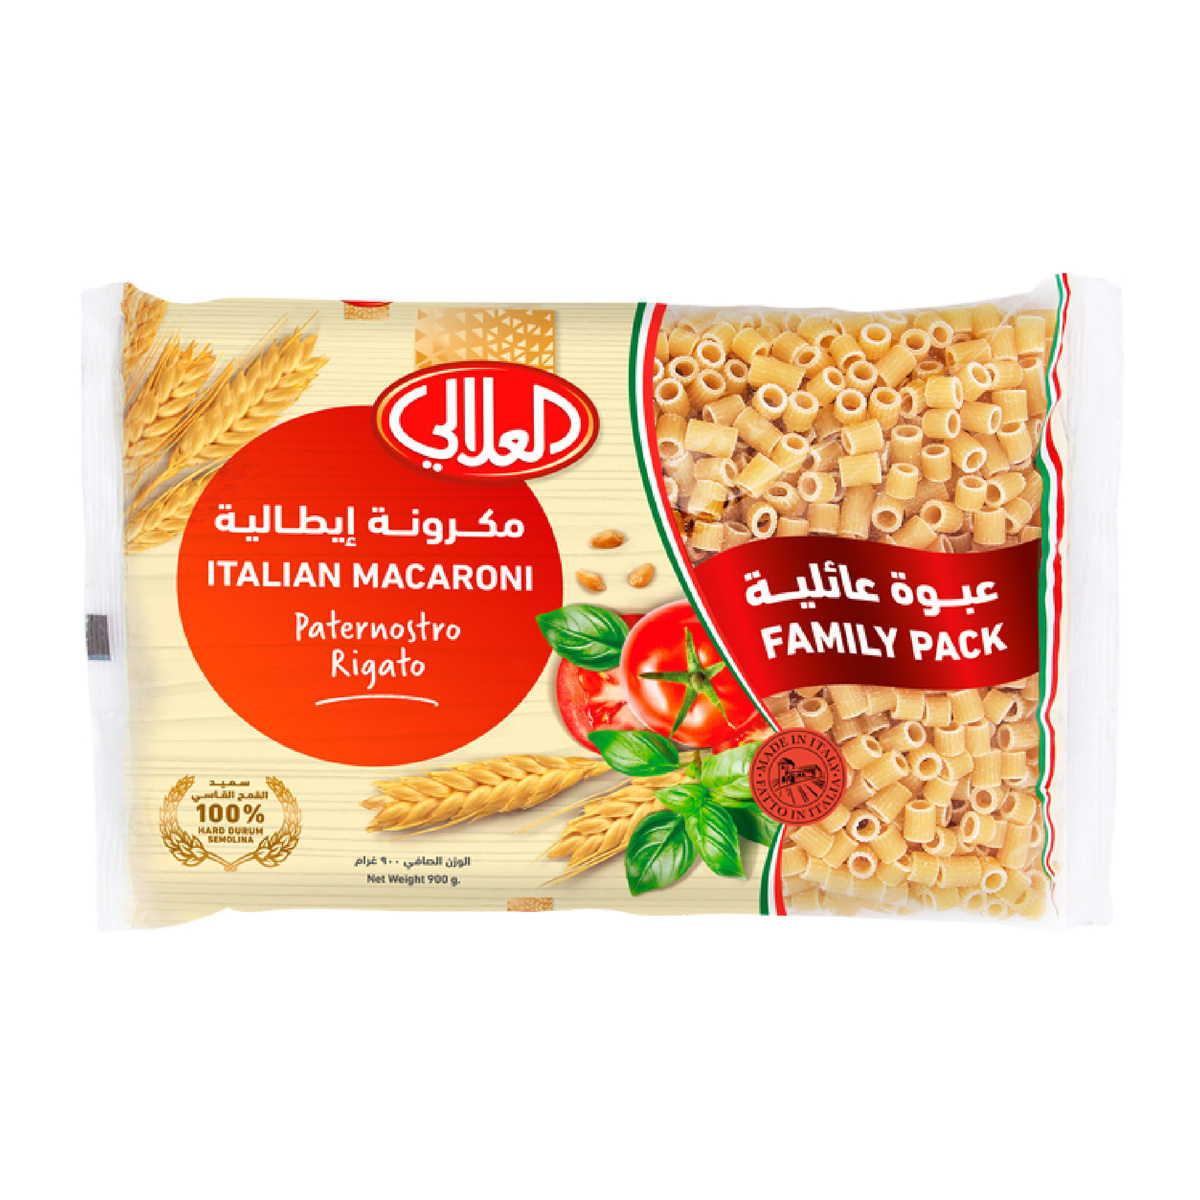 Al Alali Italian Macaroni Paternostro Rigato 900 g